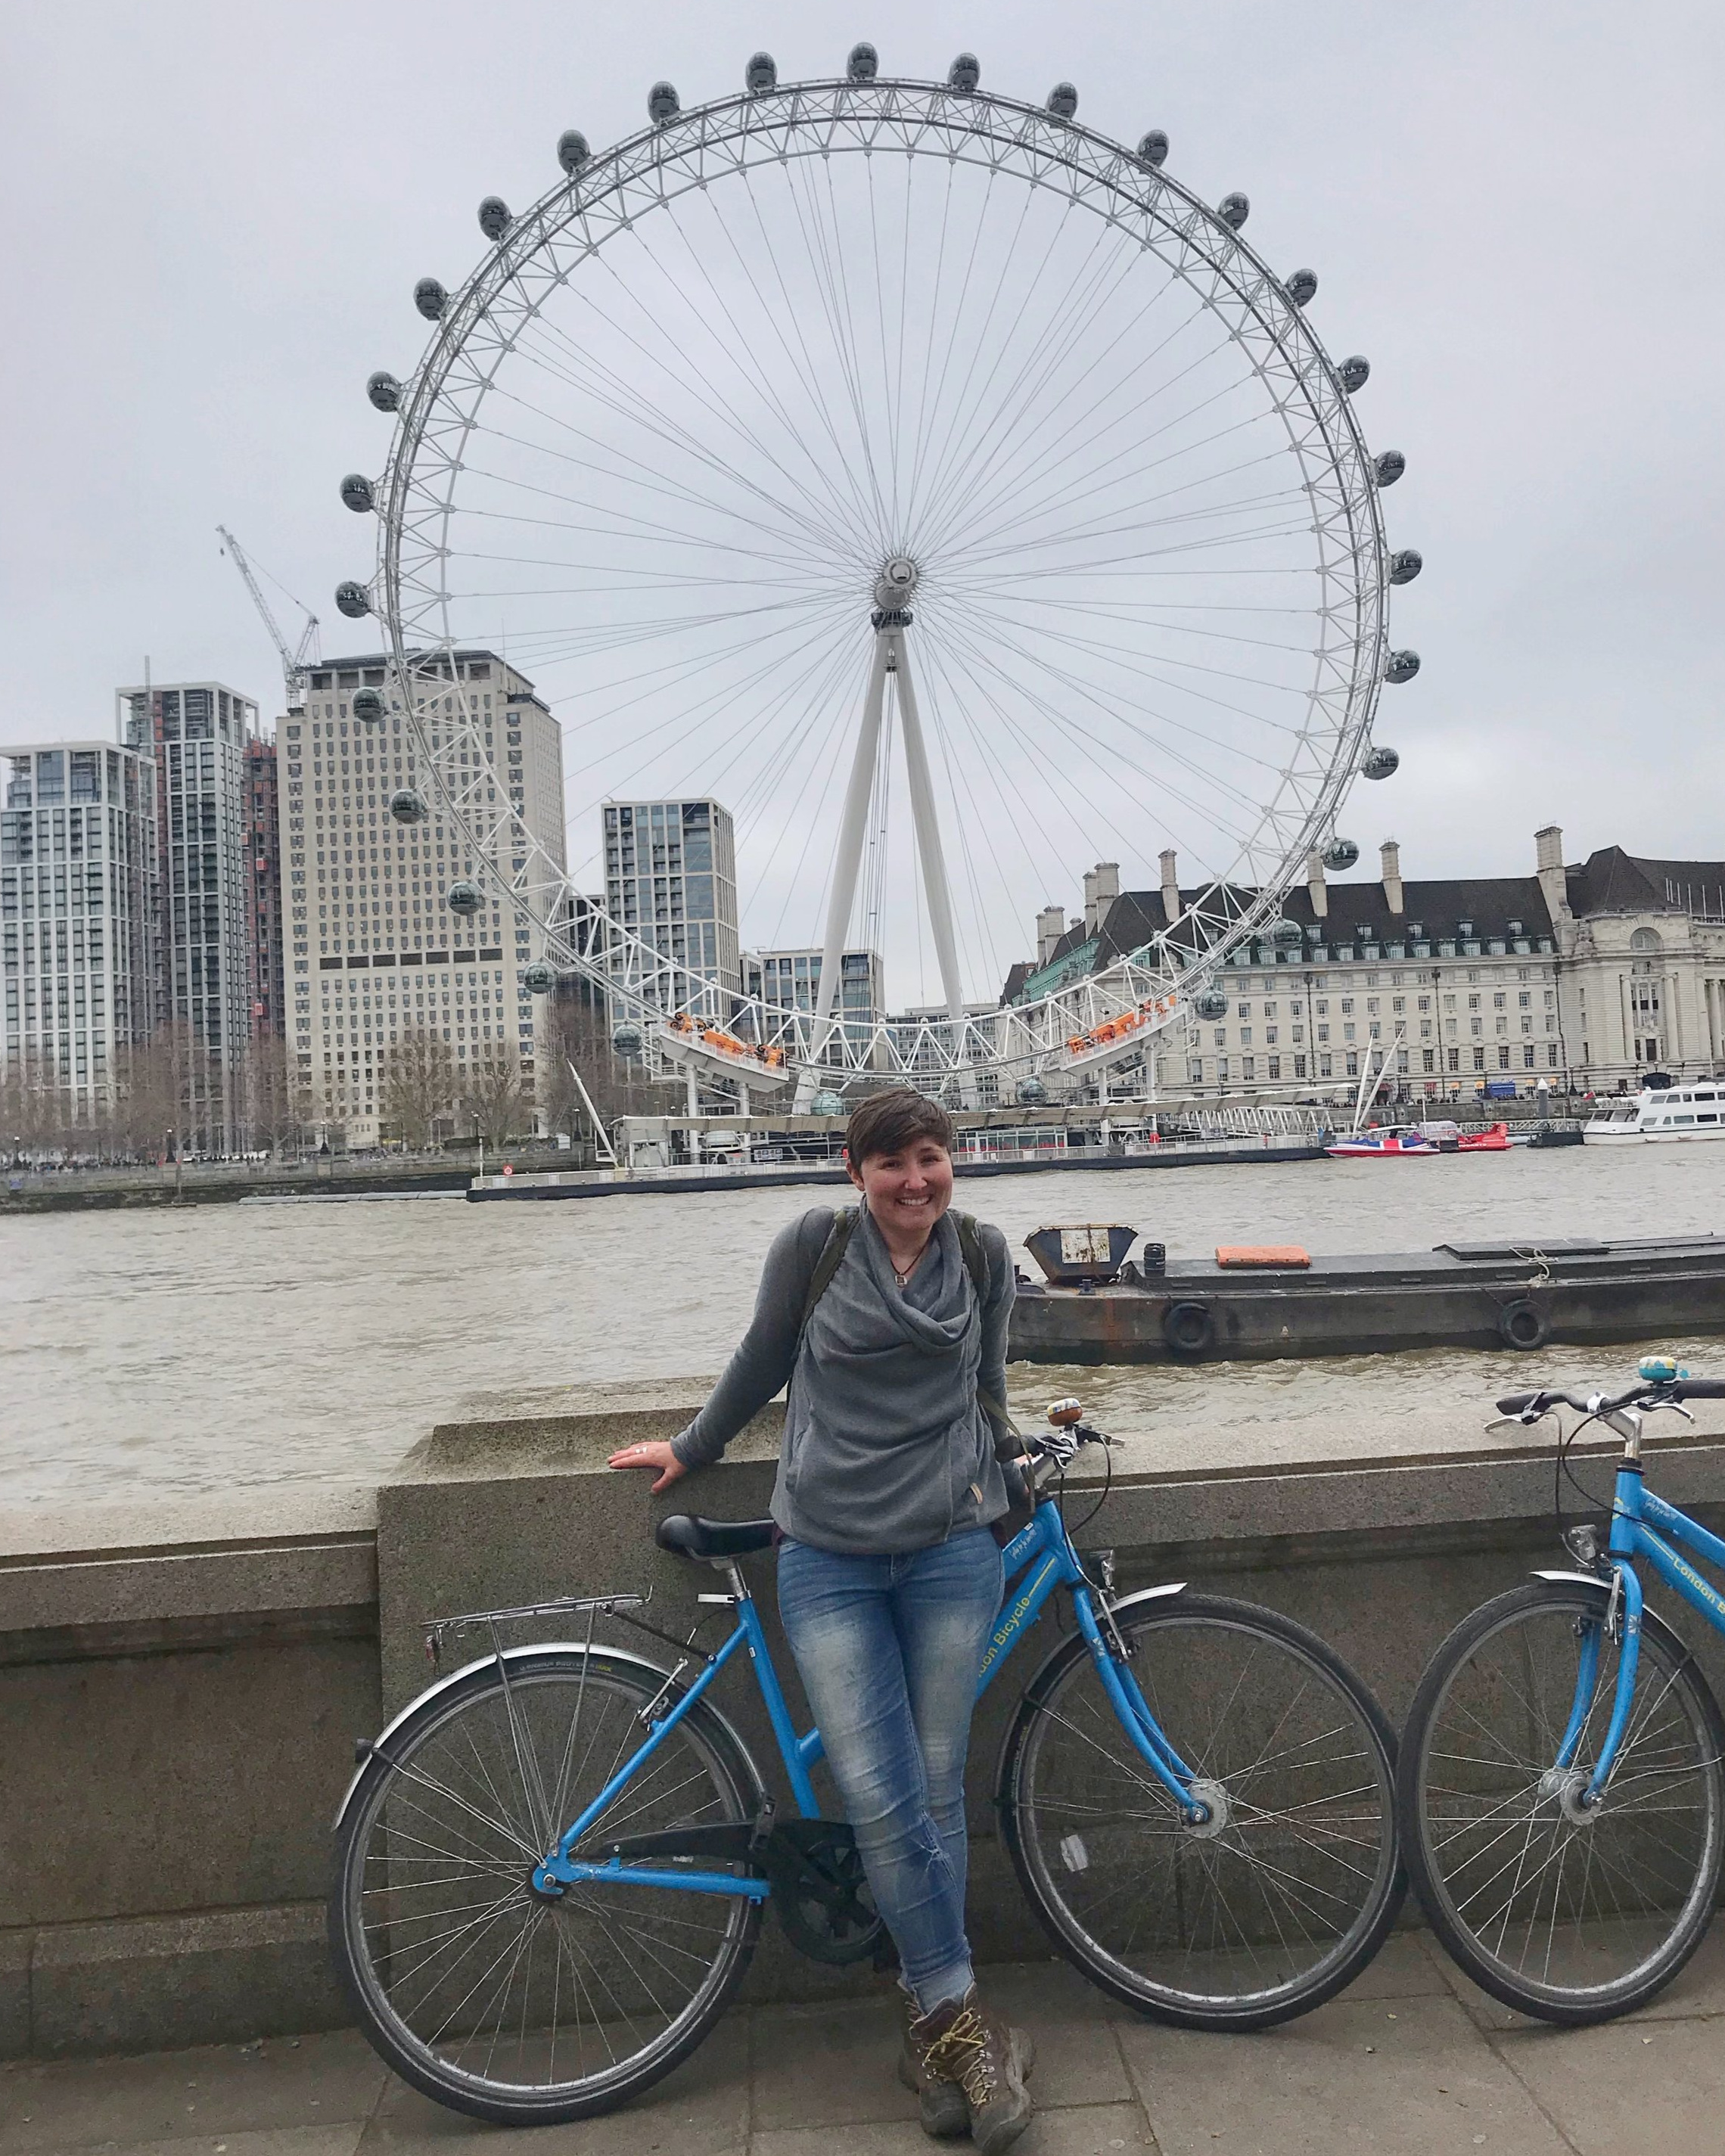  Visit London - London Eye 